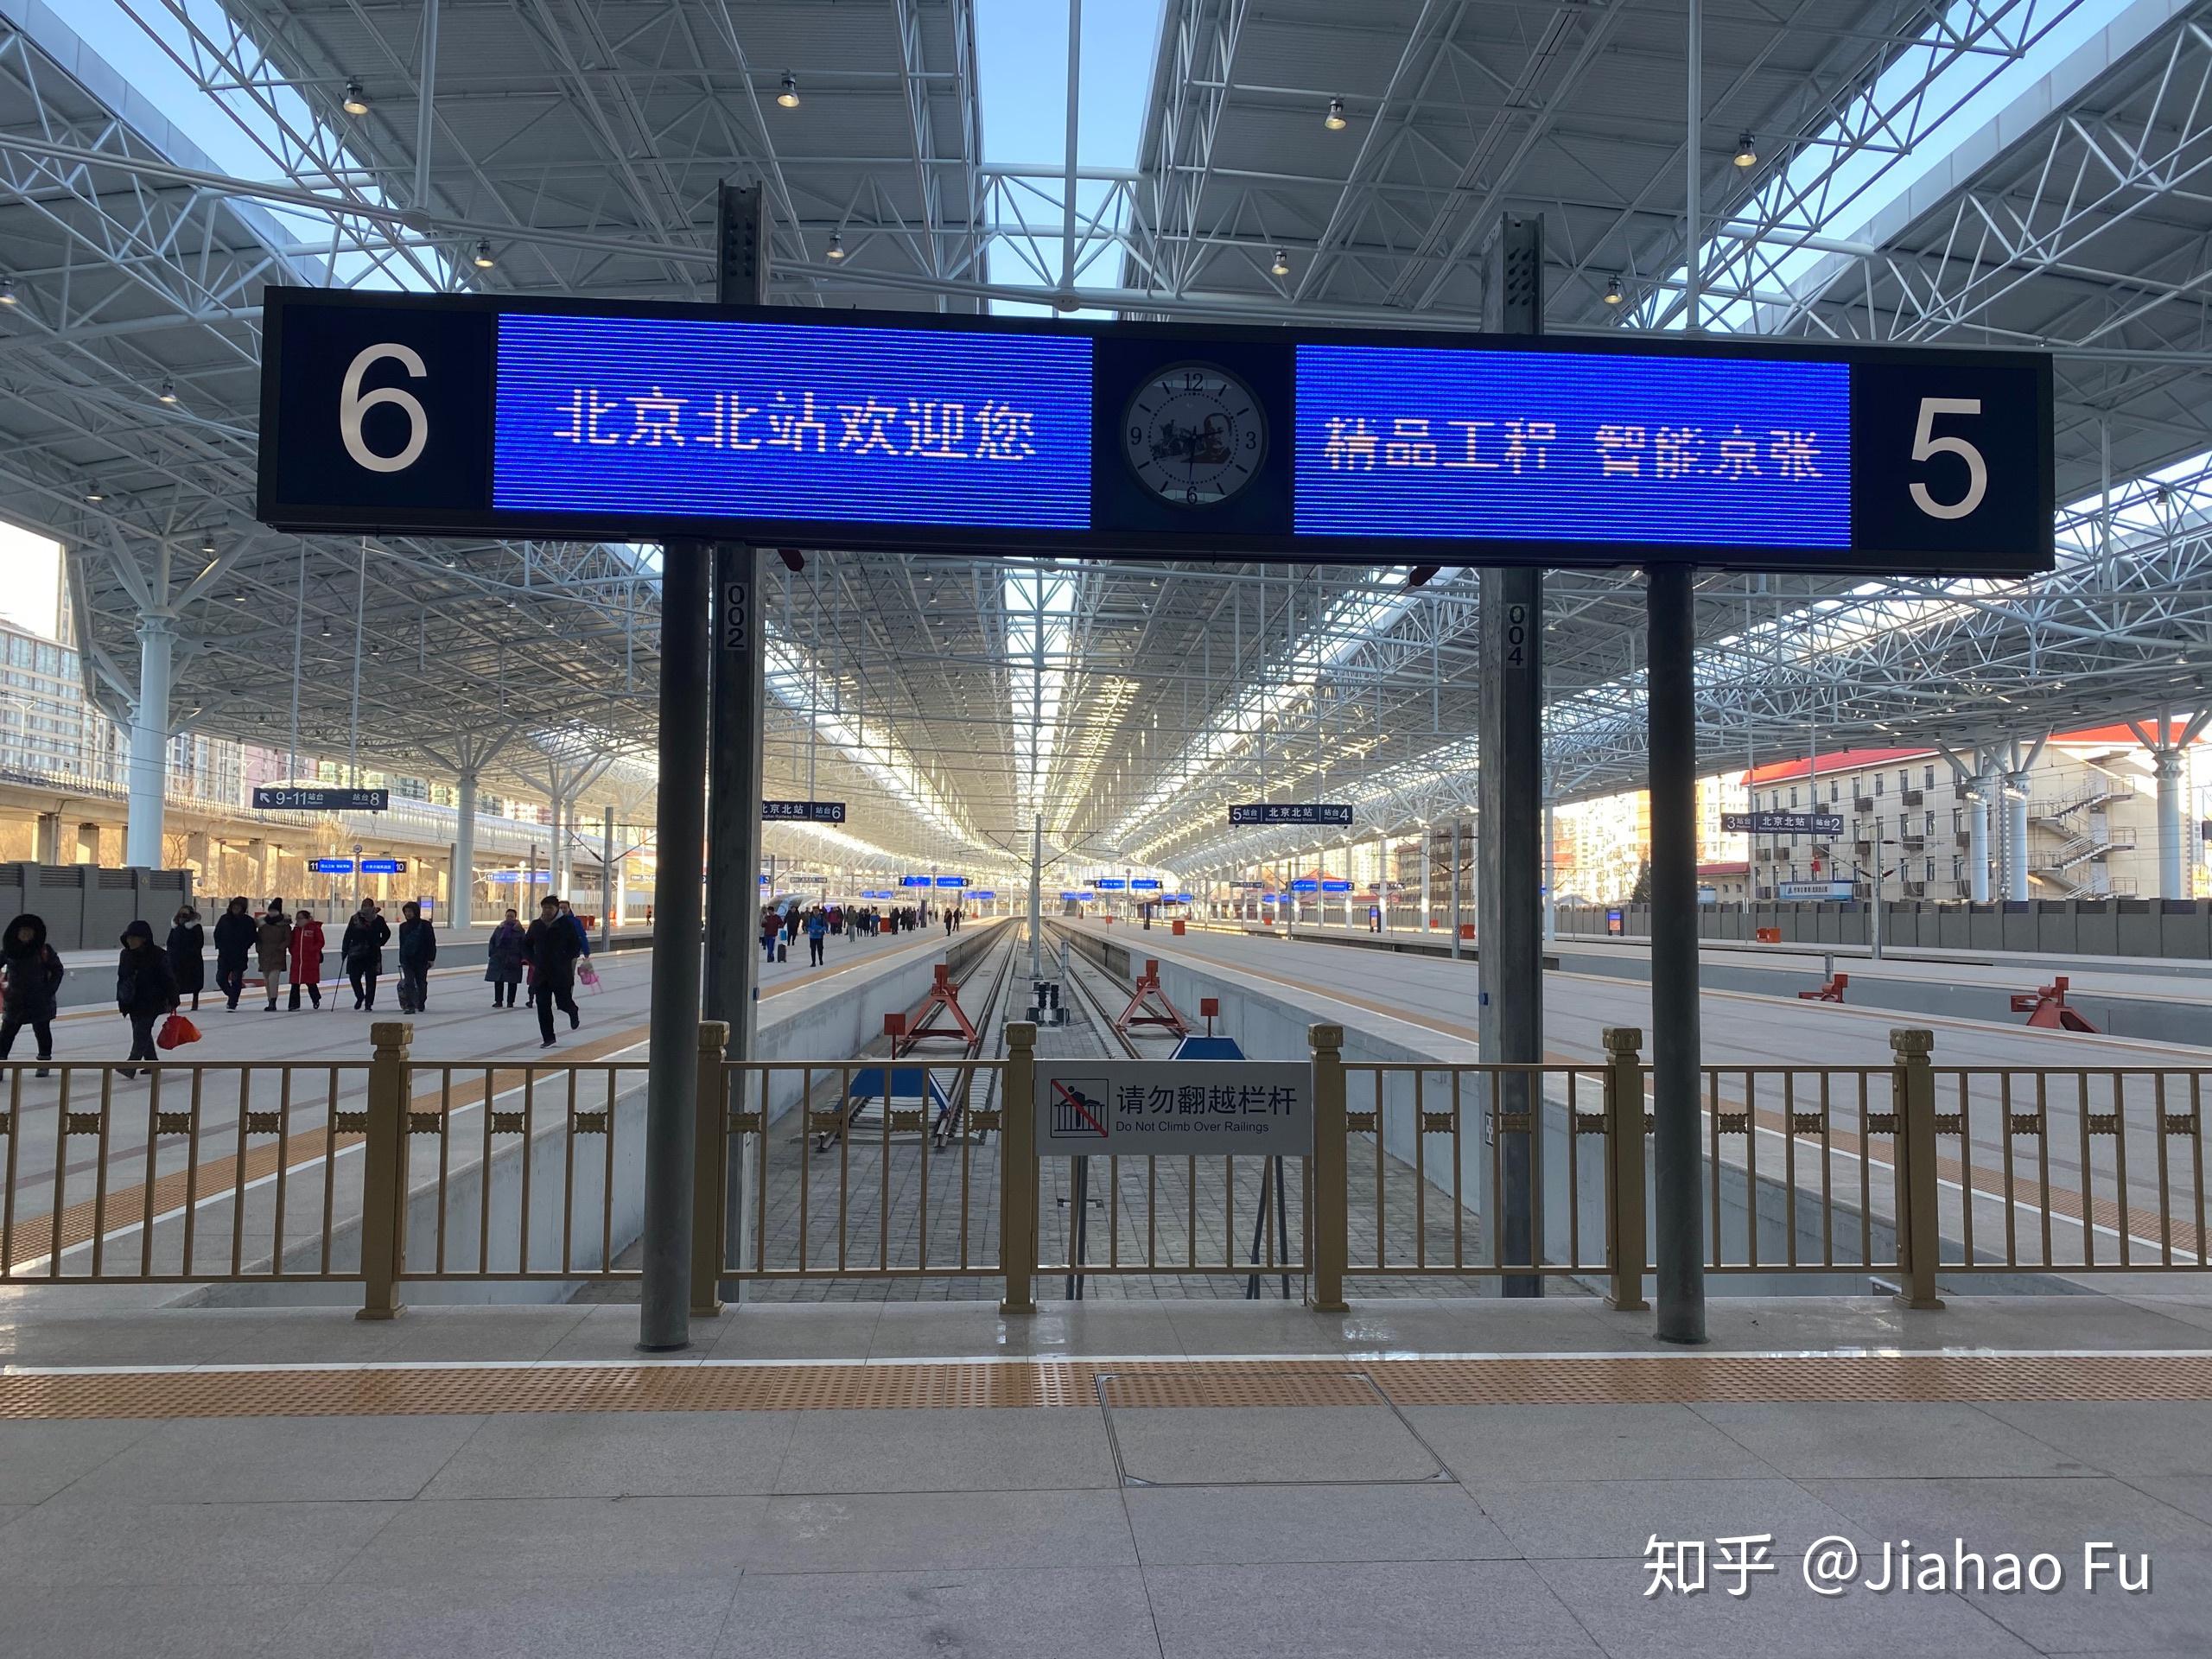 14:30 g8815次检票停靠7站台,高铁沿线都安装了老京张风格的牌匾